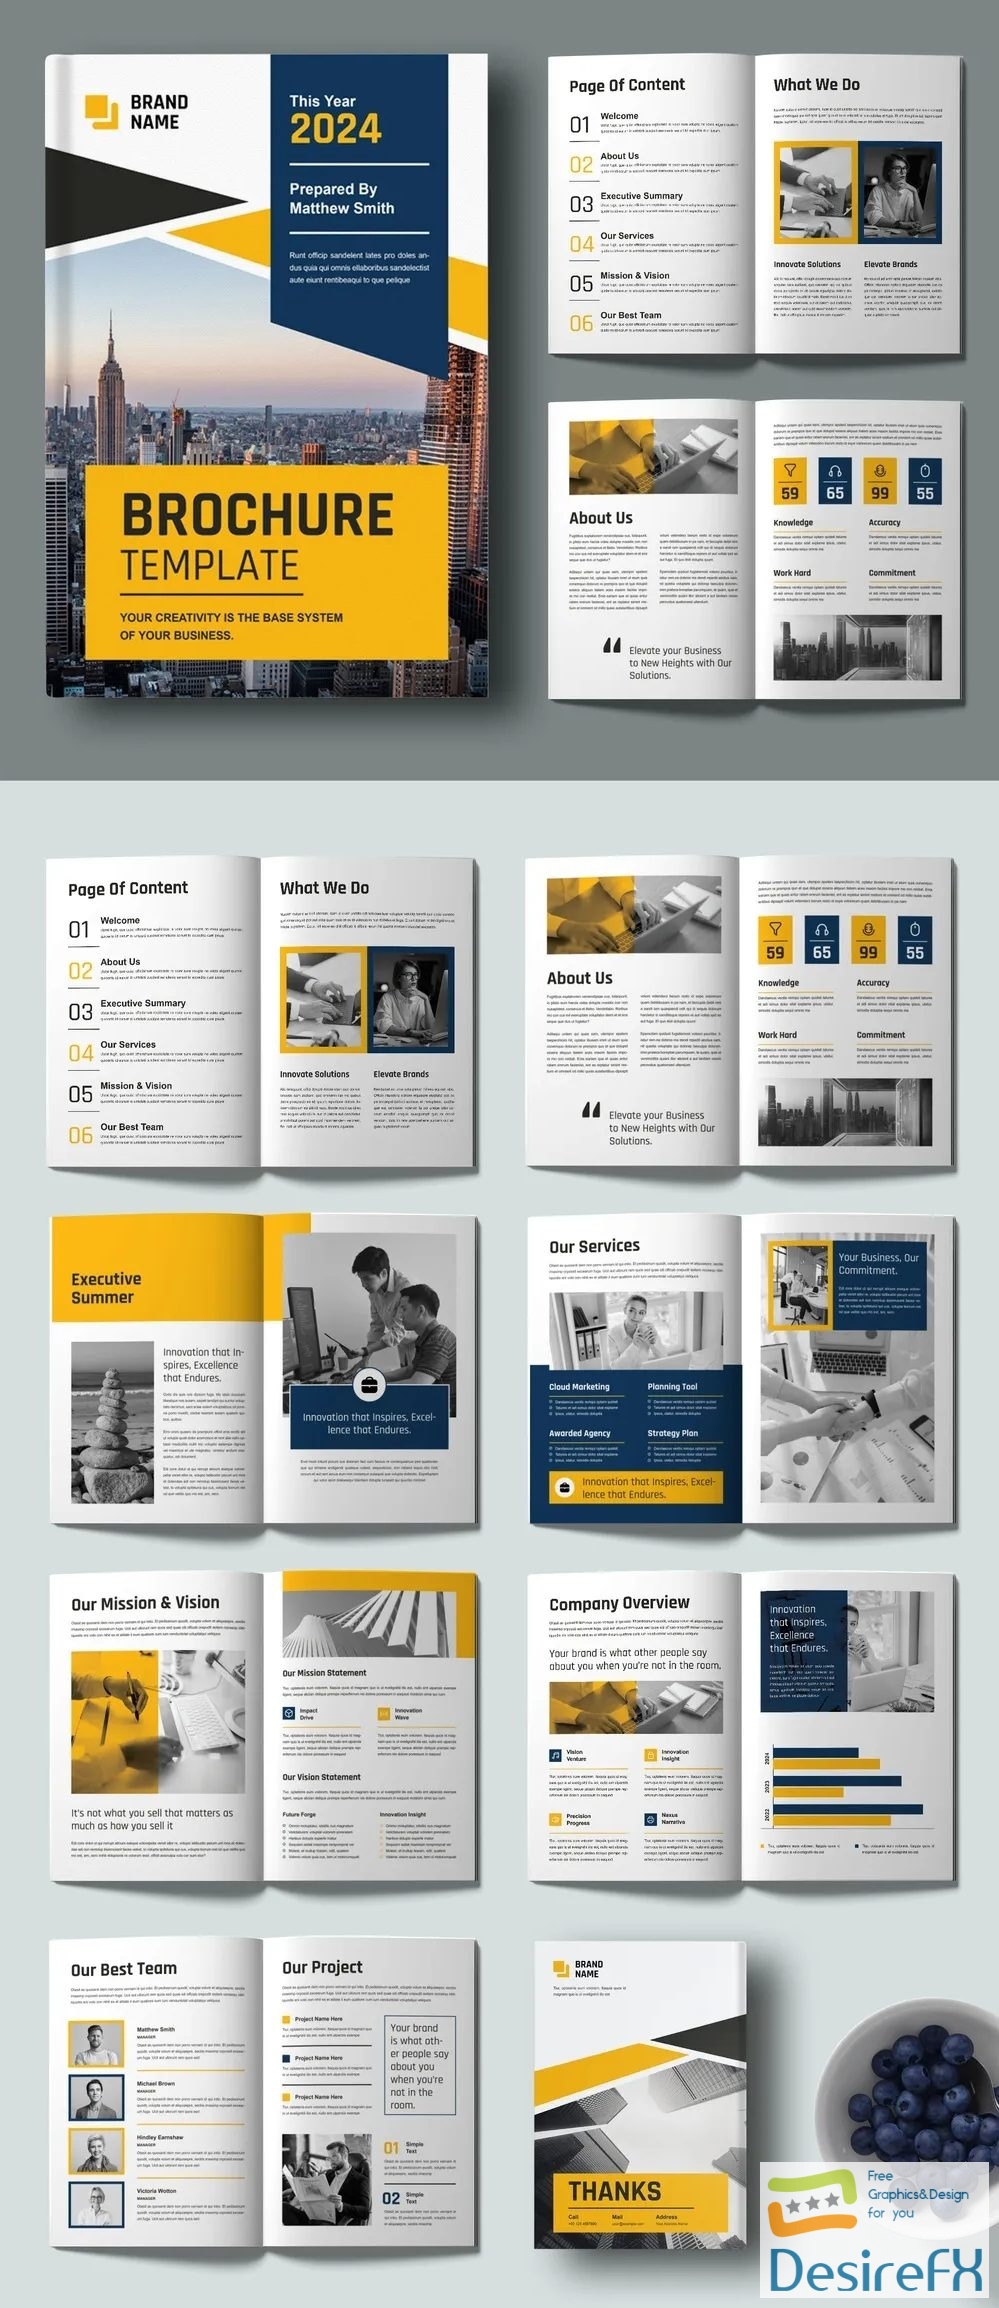 Adobestock - Corporate Business Brochure Template 718529720